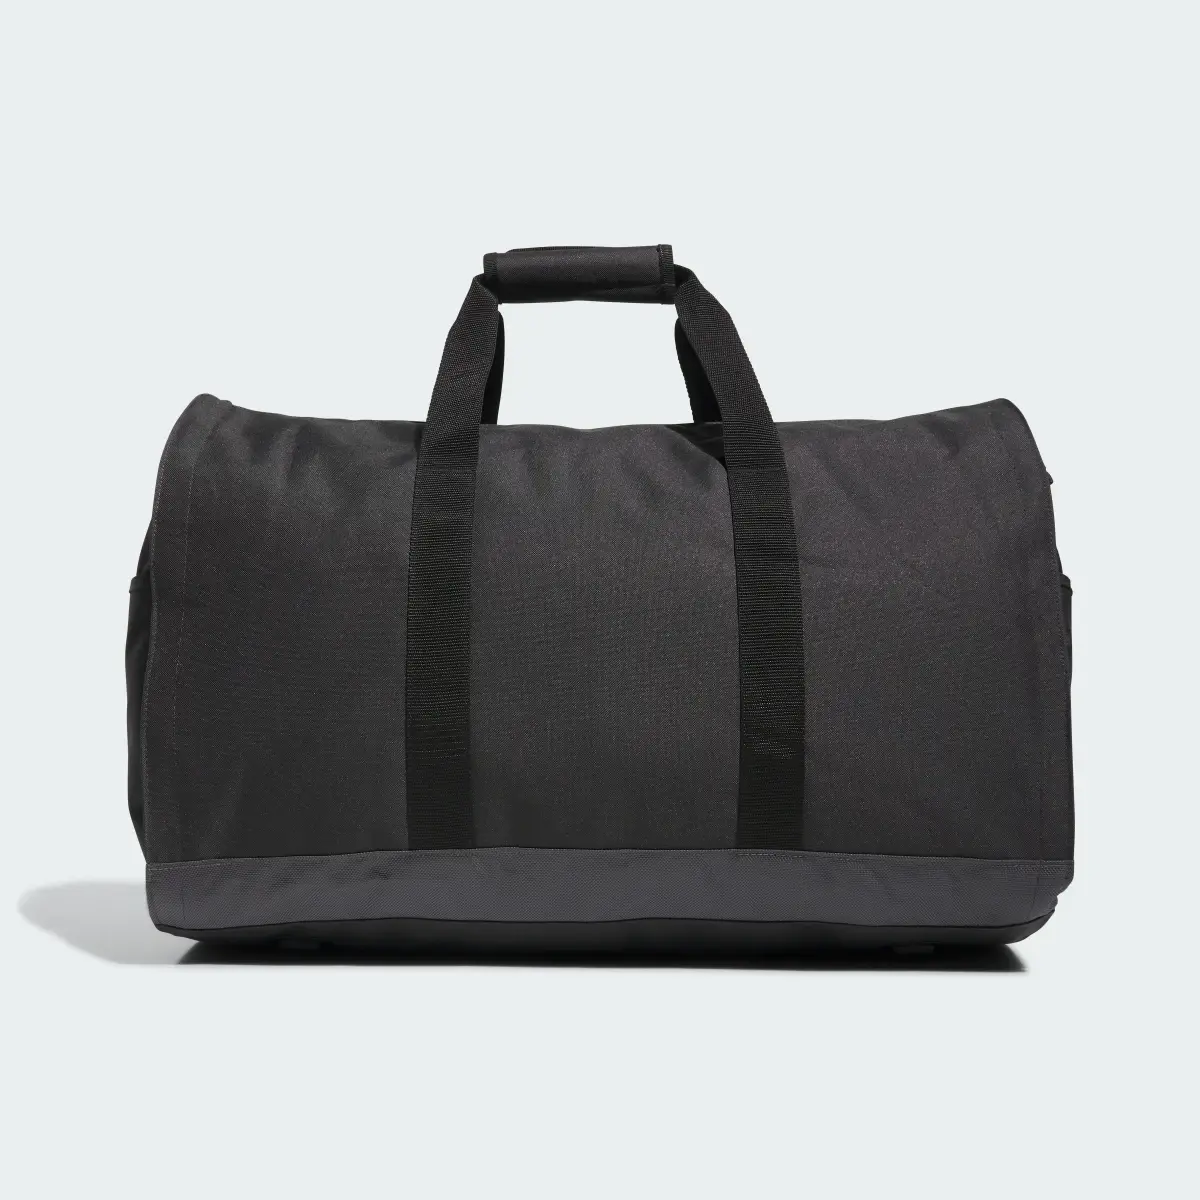 Adidas Garment Duffel Bag. 3